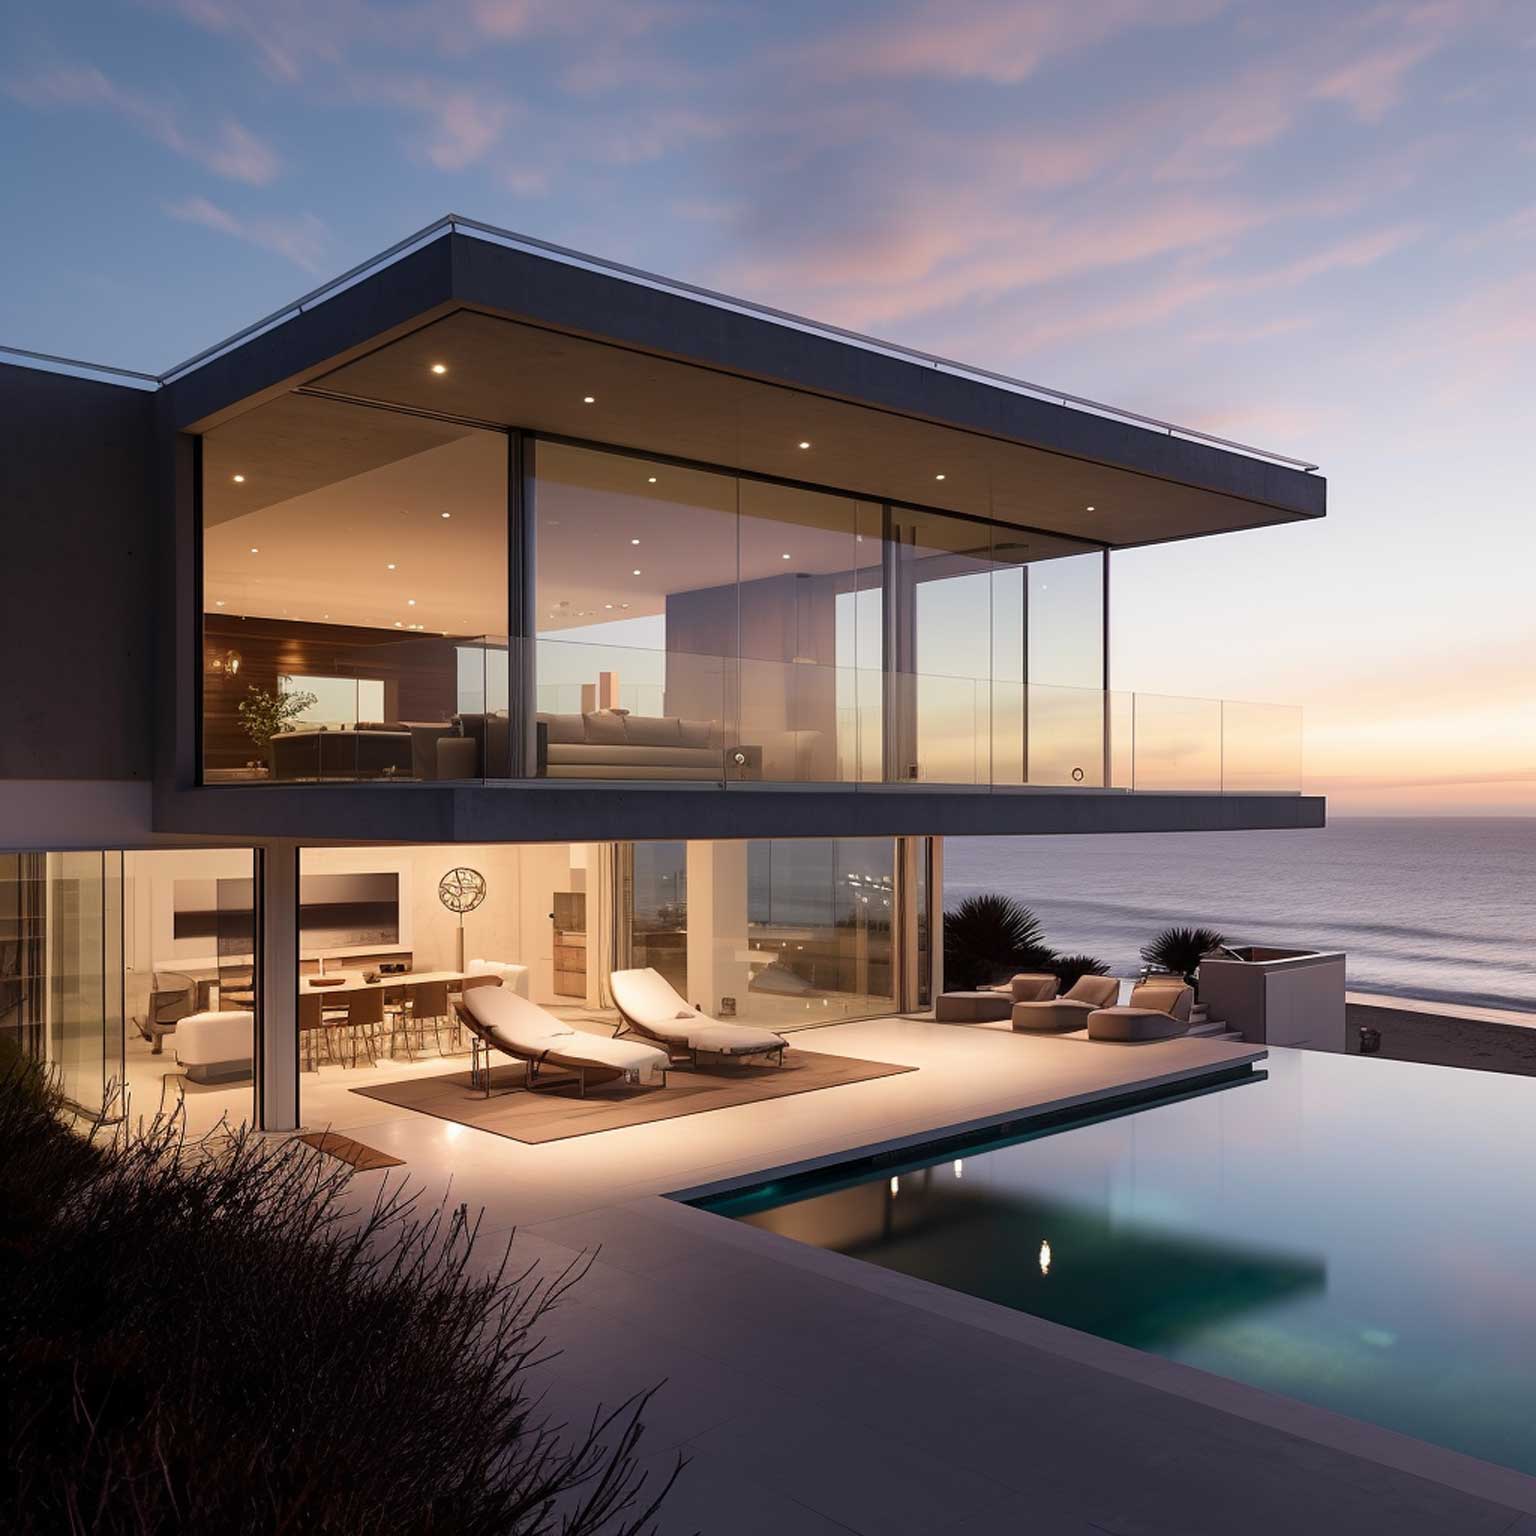 Beach House Plans: Design Your Dream Coastal Getaway